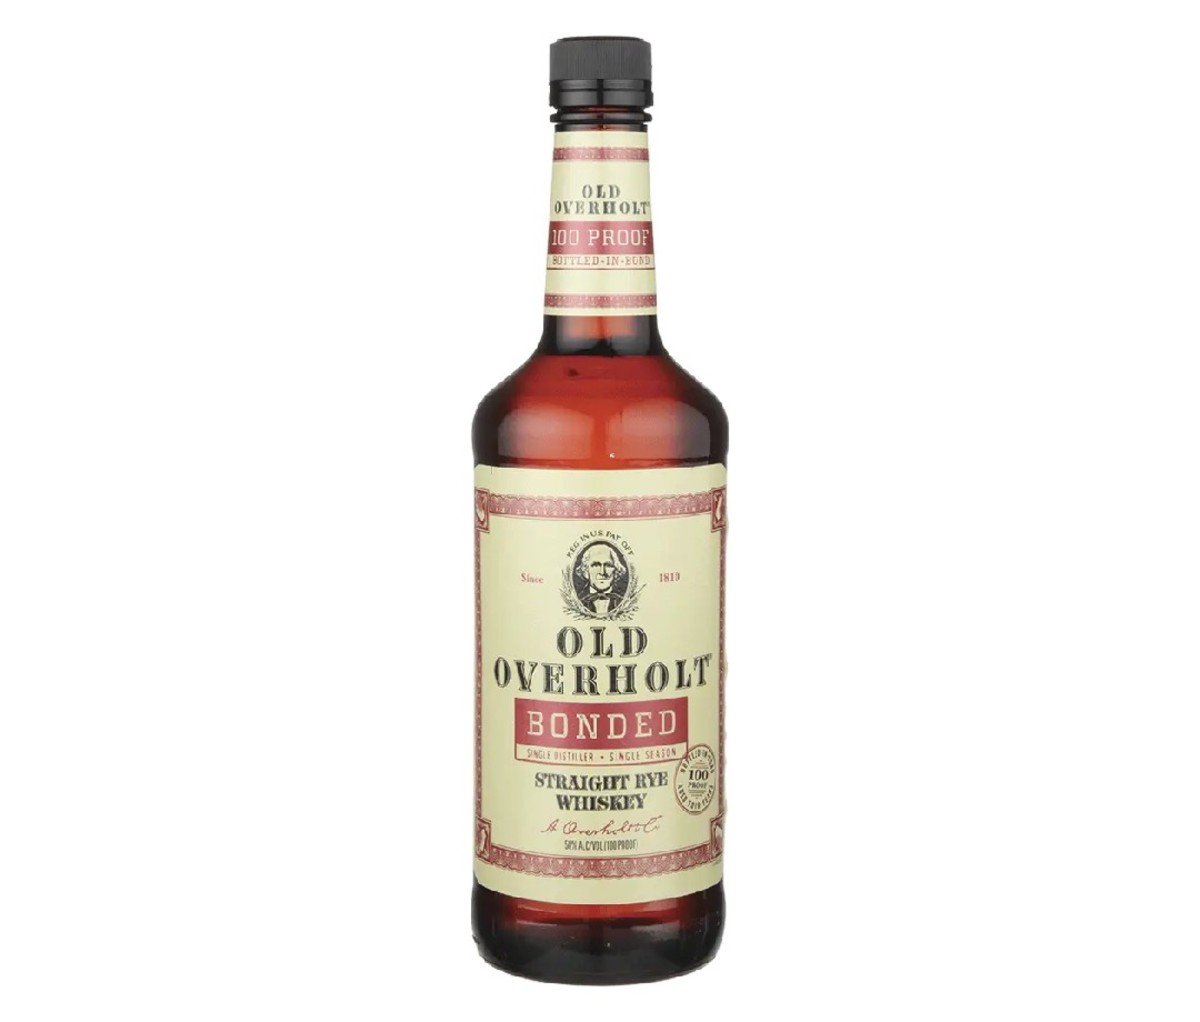 A bottle of Old Overholt Bonded whiskey